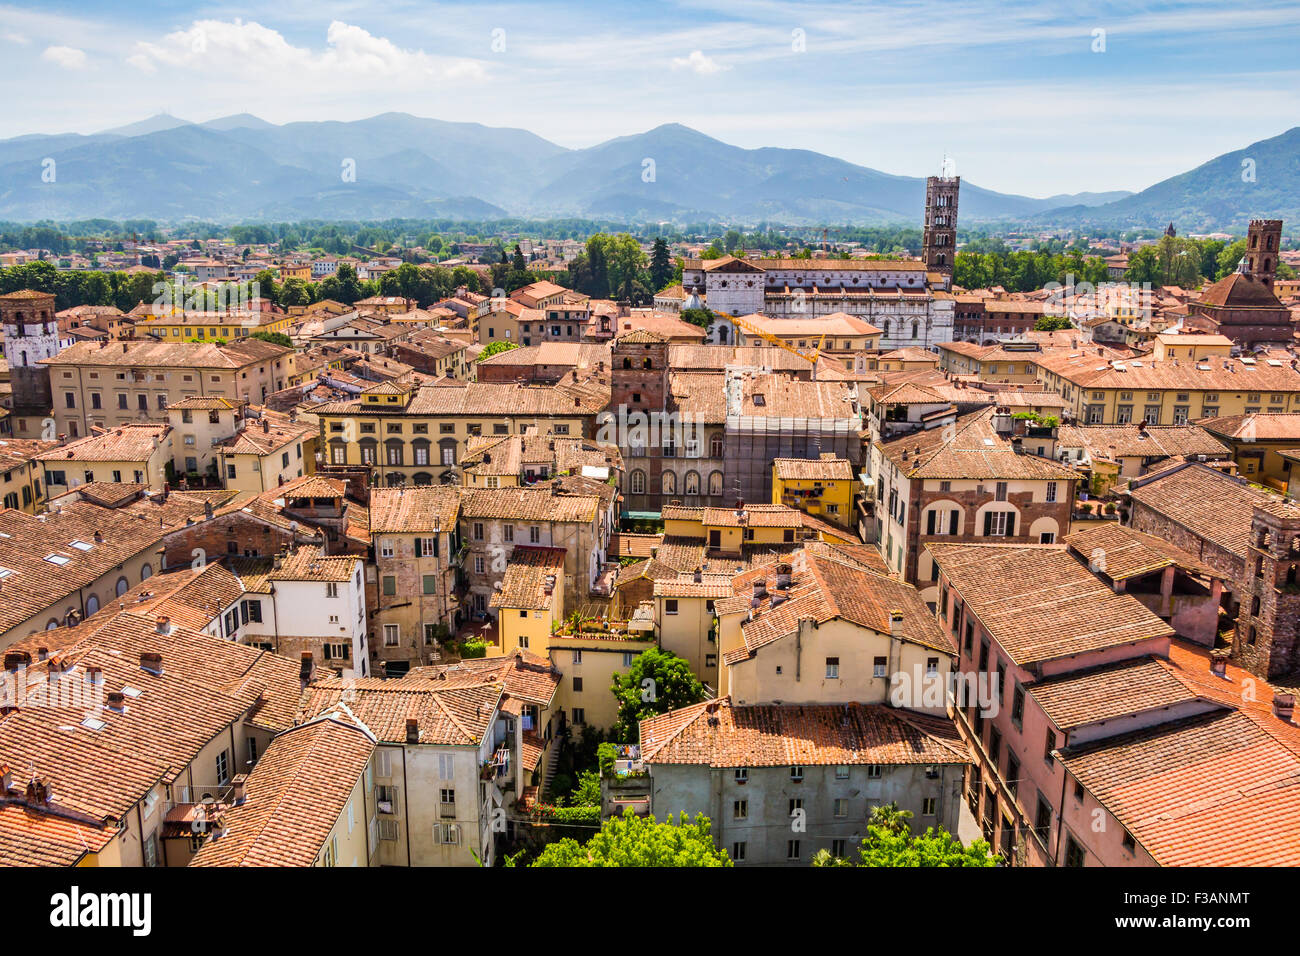 Vue sur ville italienne Lucca avec toits en terre cuite typique Banque D'Images